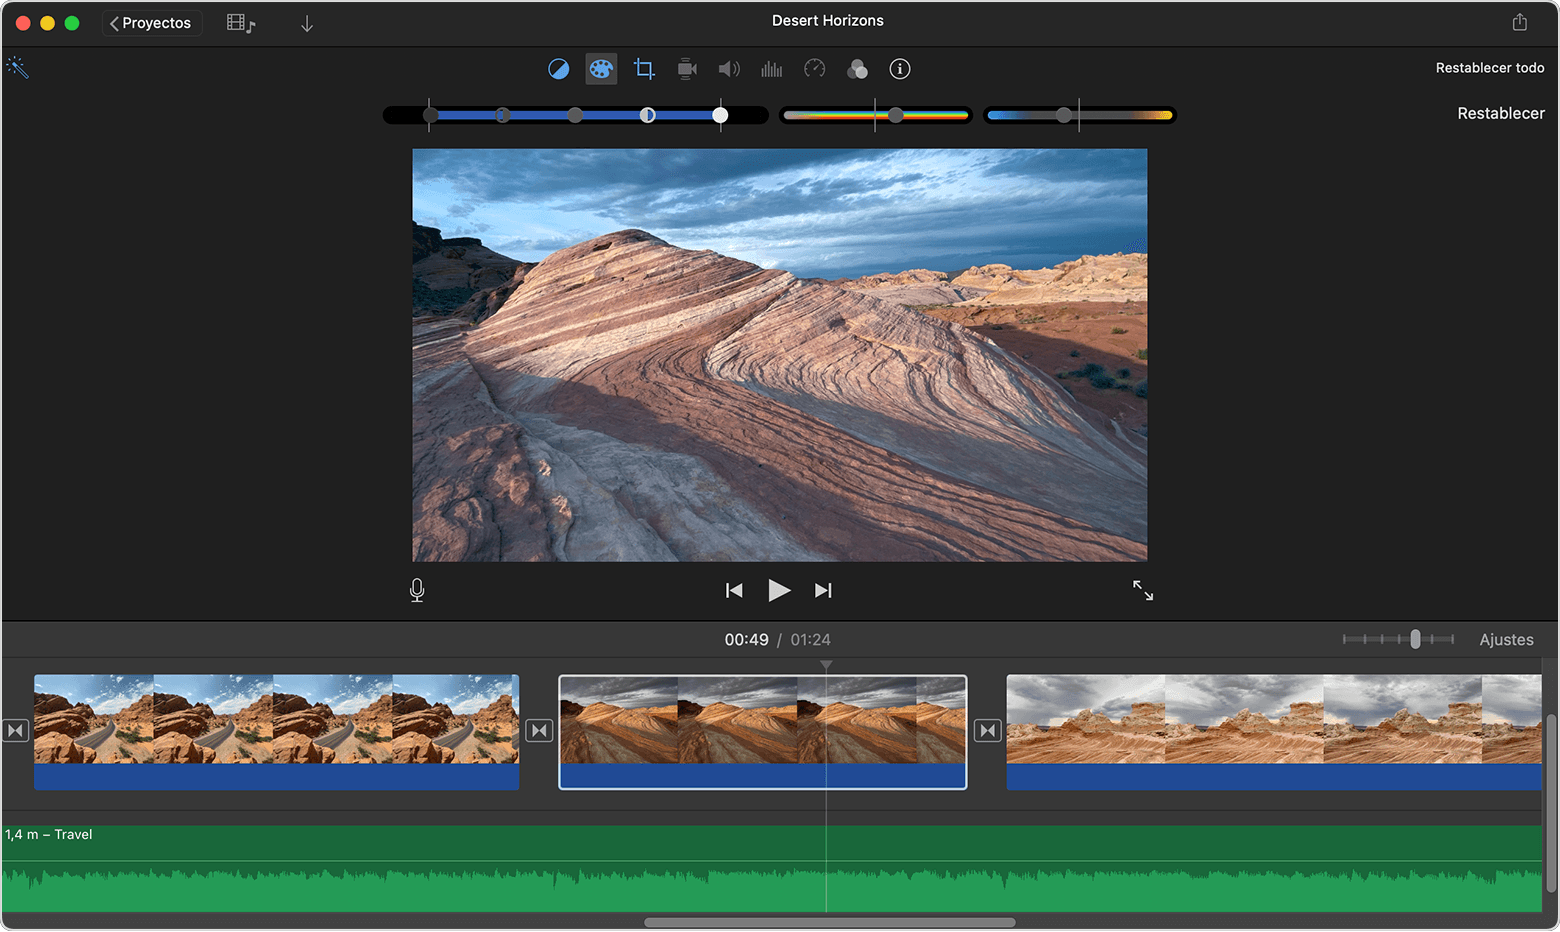 Ventana del proyecto de iMovie para Mac con los controles de corrección de color visibles